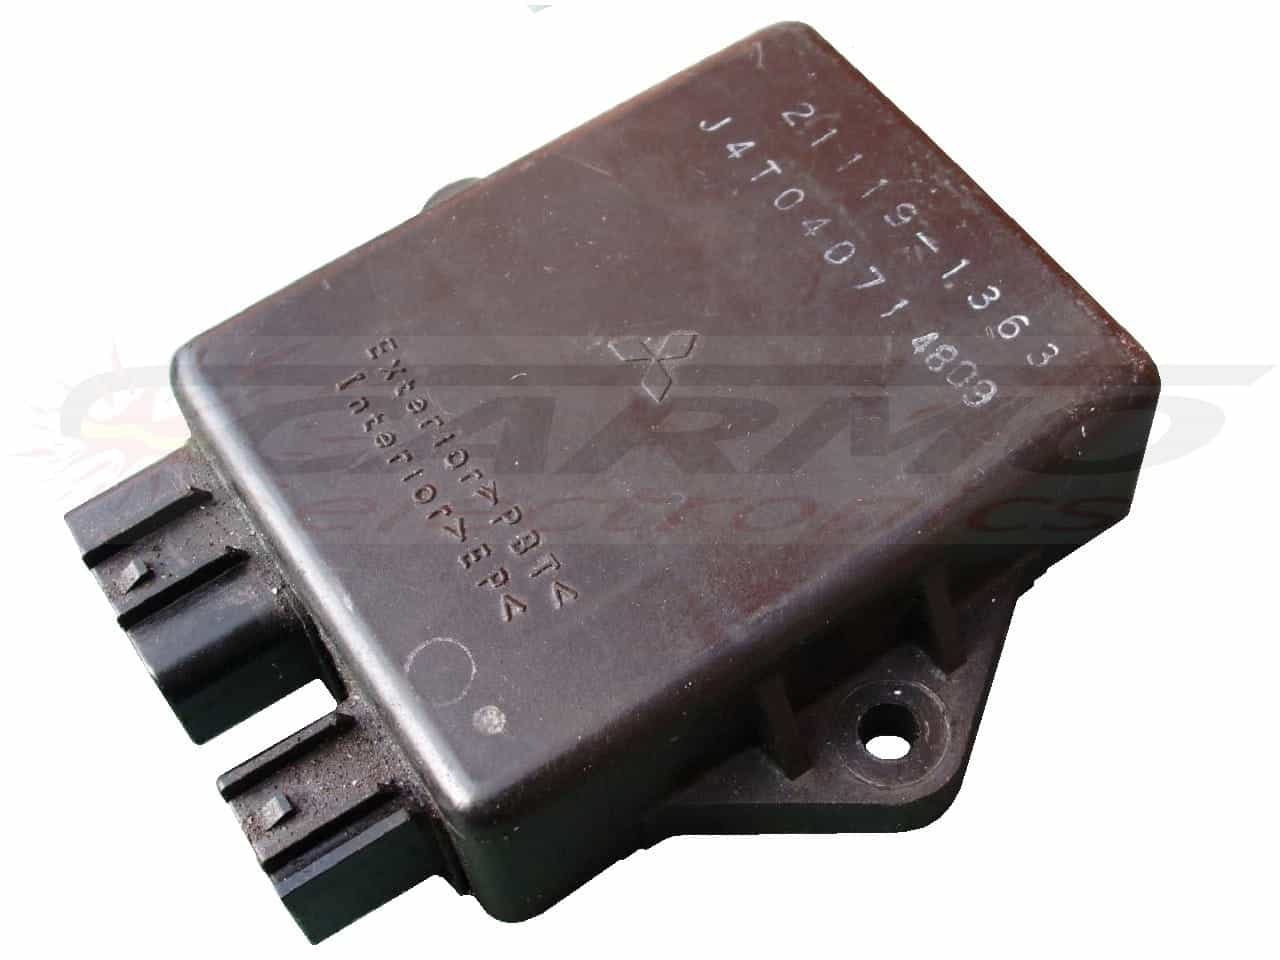 ZXR750 CDI TCI ECU controller (21119-1365, 21119-1363)